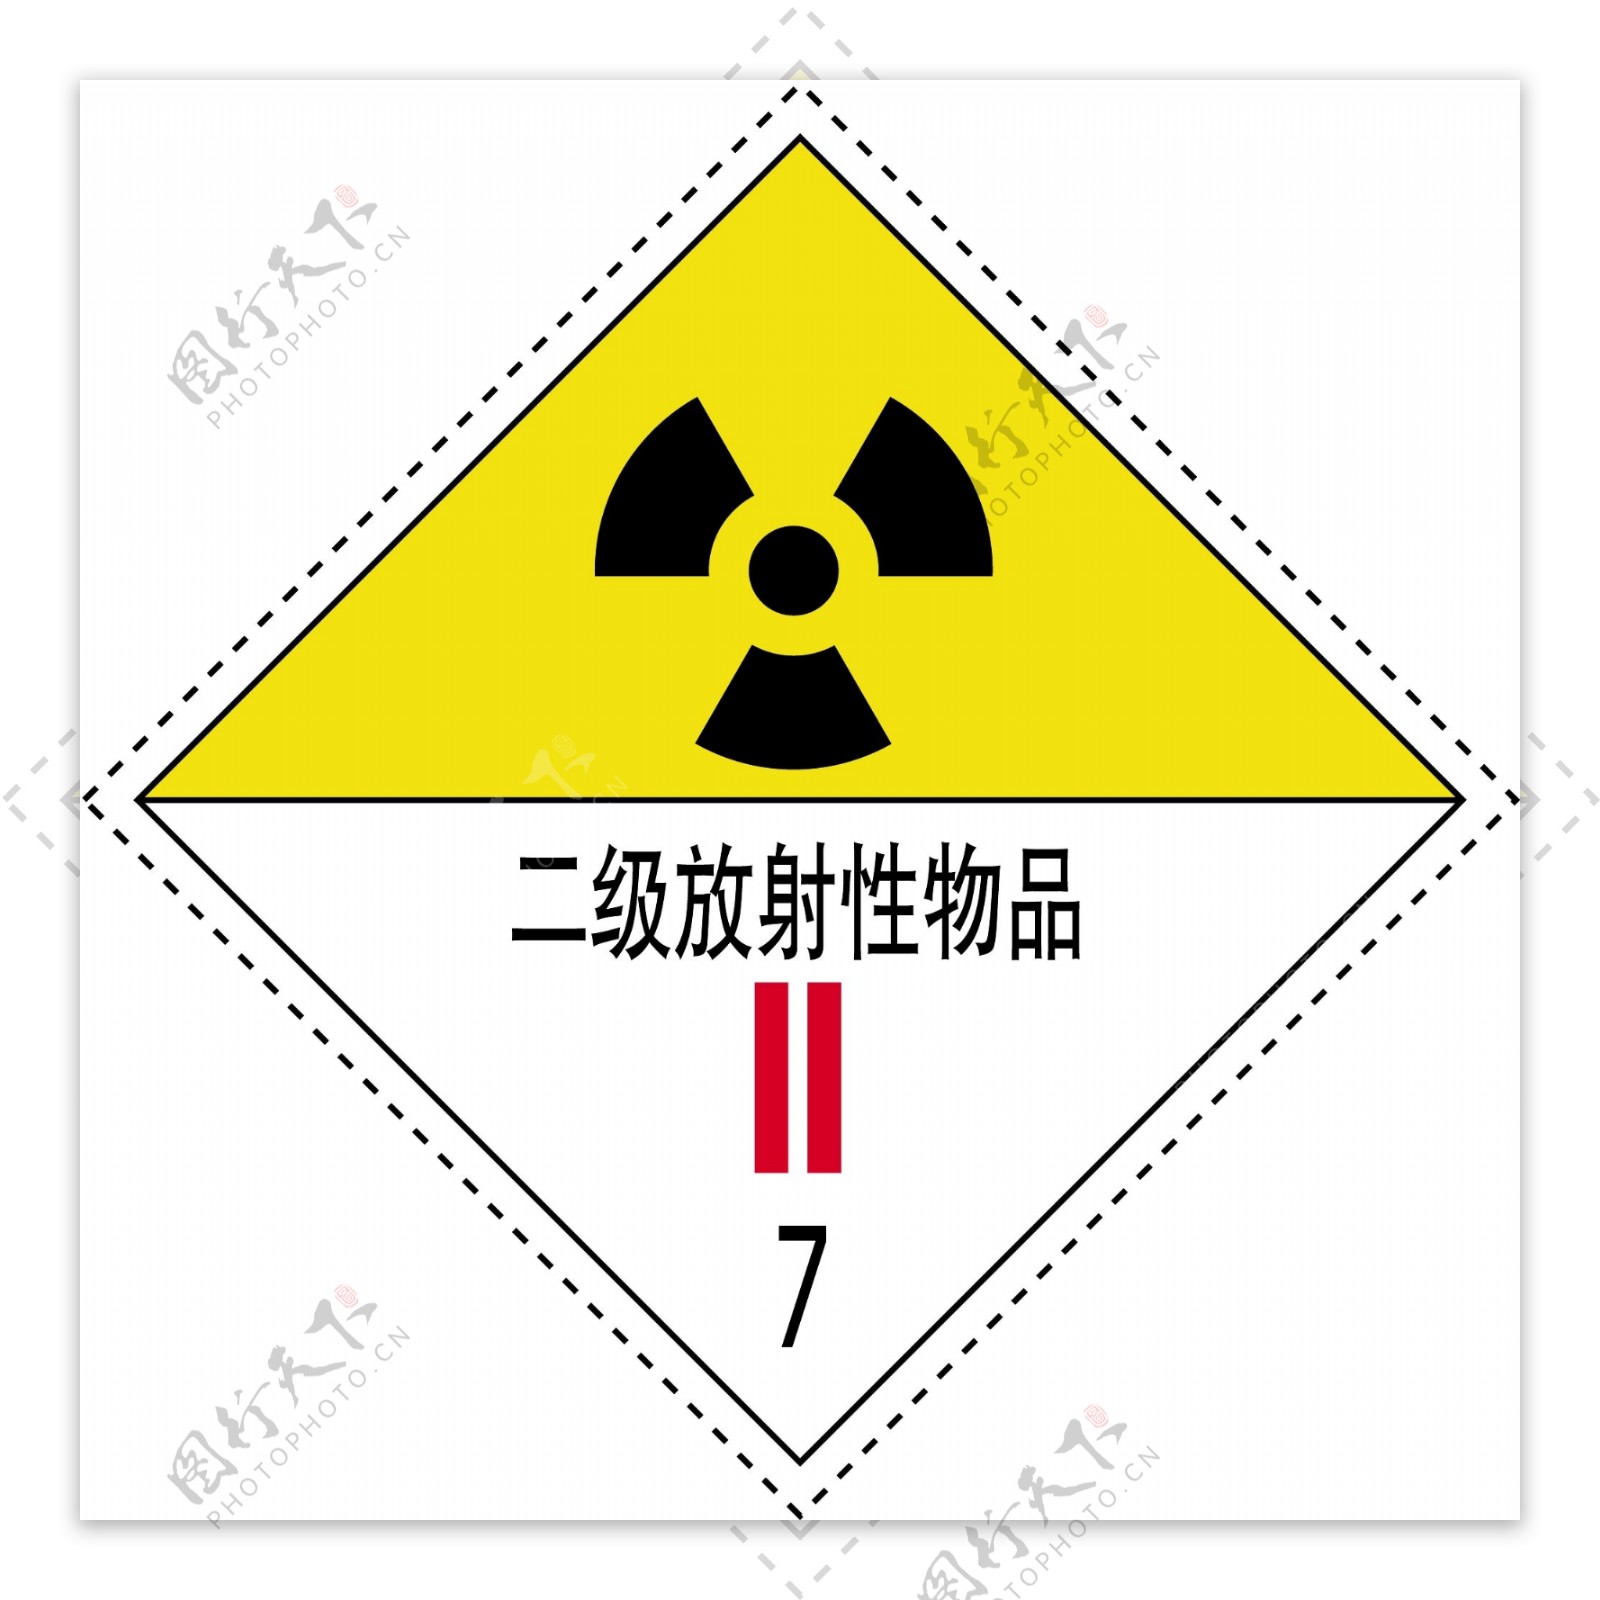 二级放射性物品图片